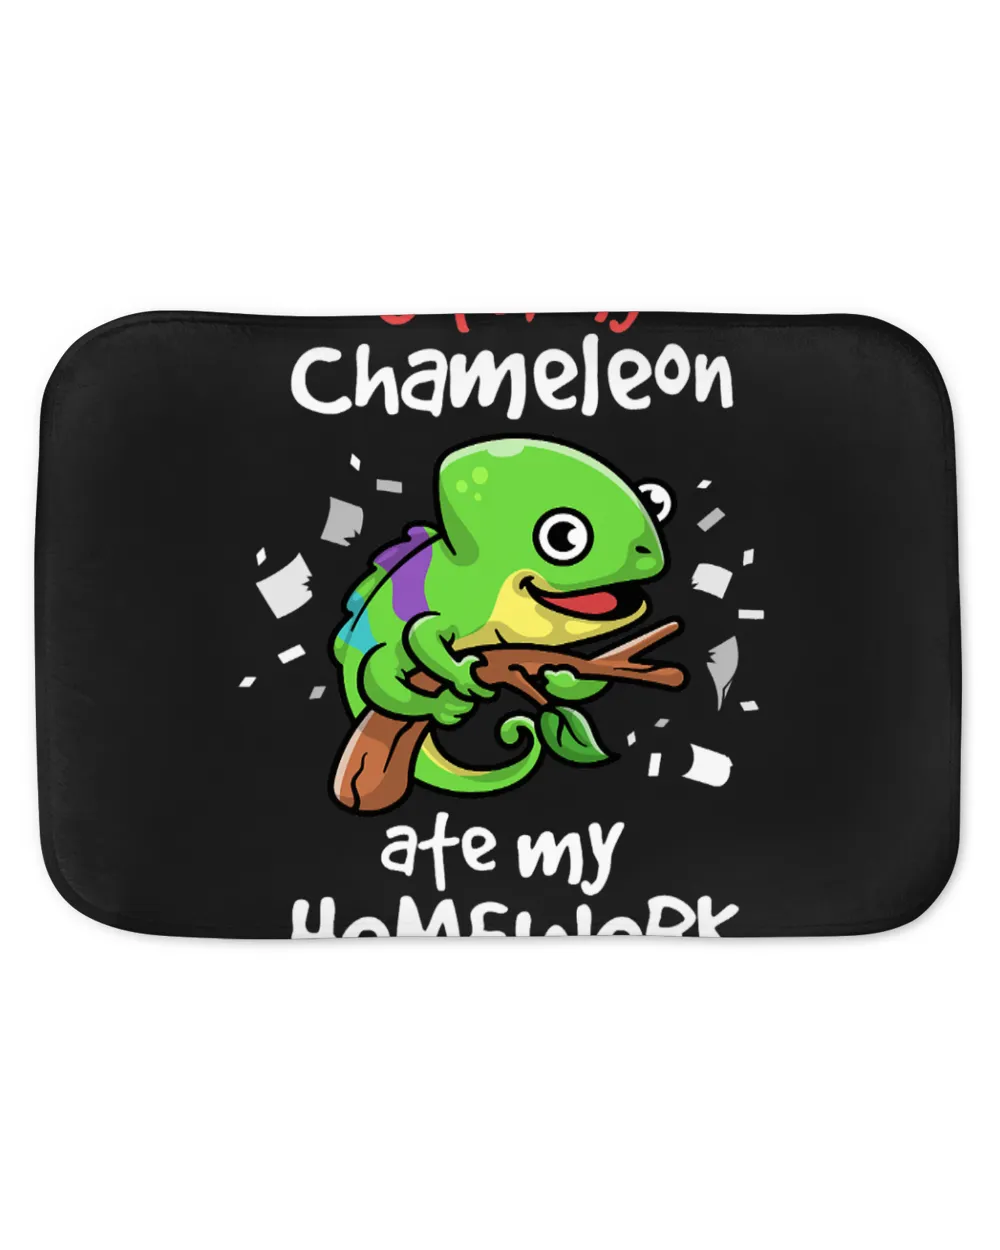 Chameleon Lover Oops My Chameleon Ate My Homework Pet Reptile Lover